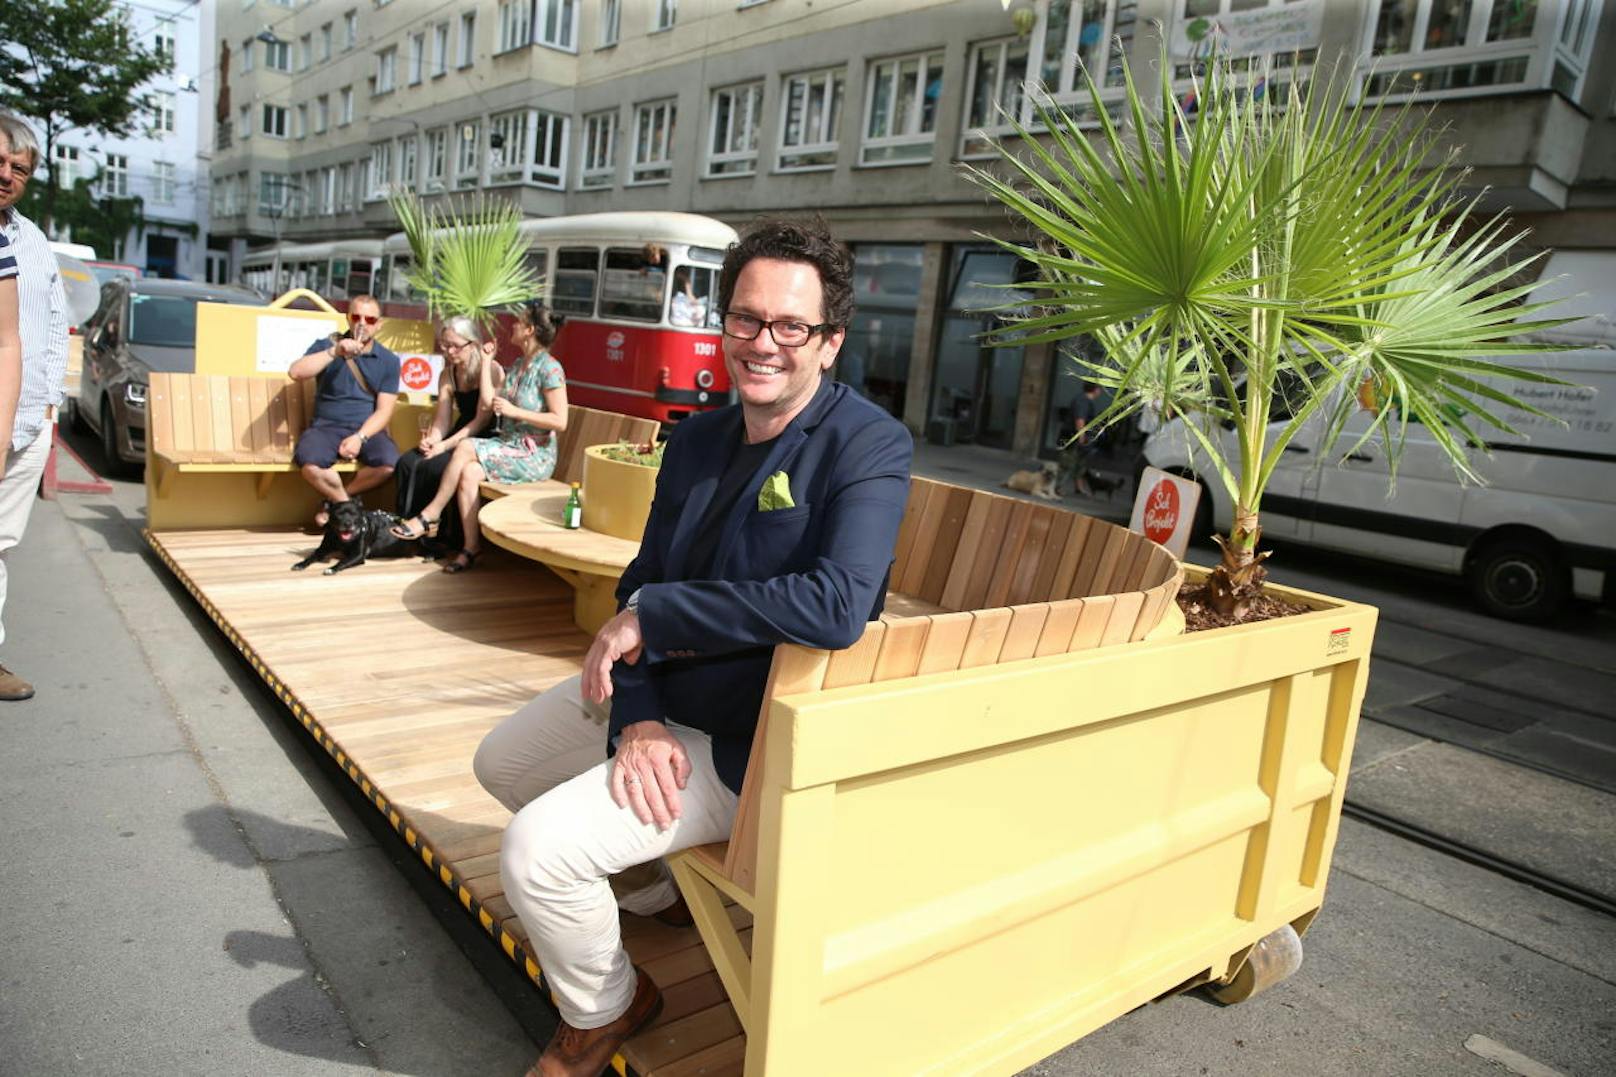 Begeistert von der Idee zeigte sich auch der Neubauer Bezirksvorsteher Markus Reiter (Grüne), der neuen mobilen Schanigarten als "Juwel im Bezirk" bezeichnet.